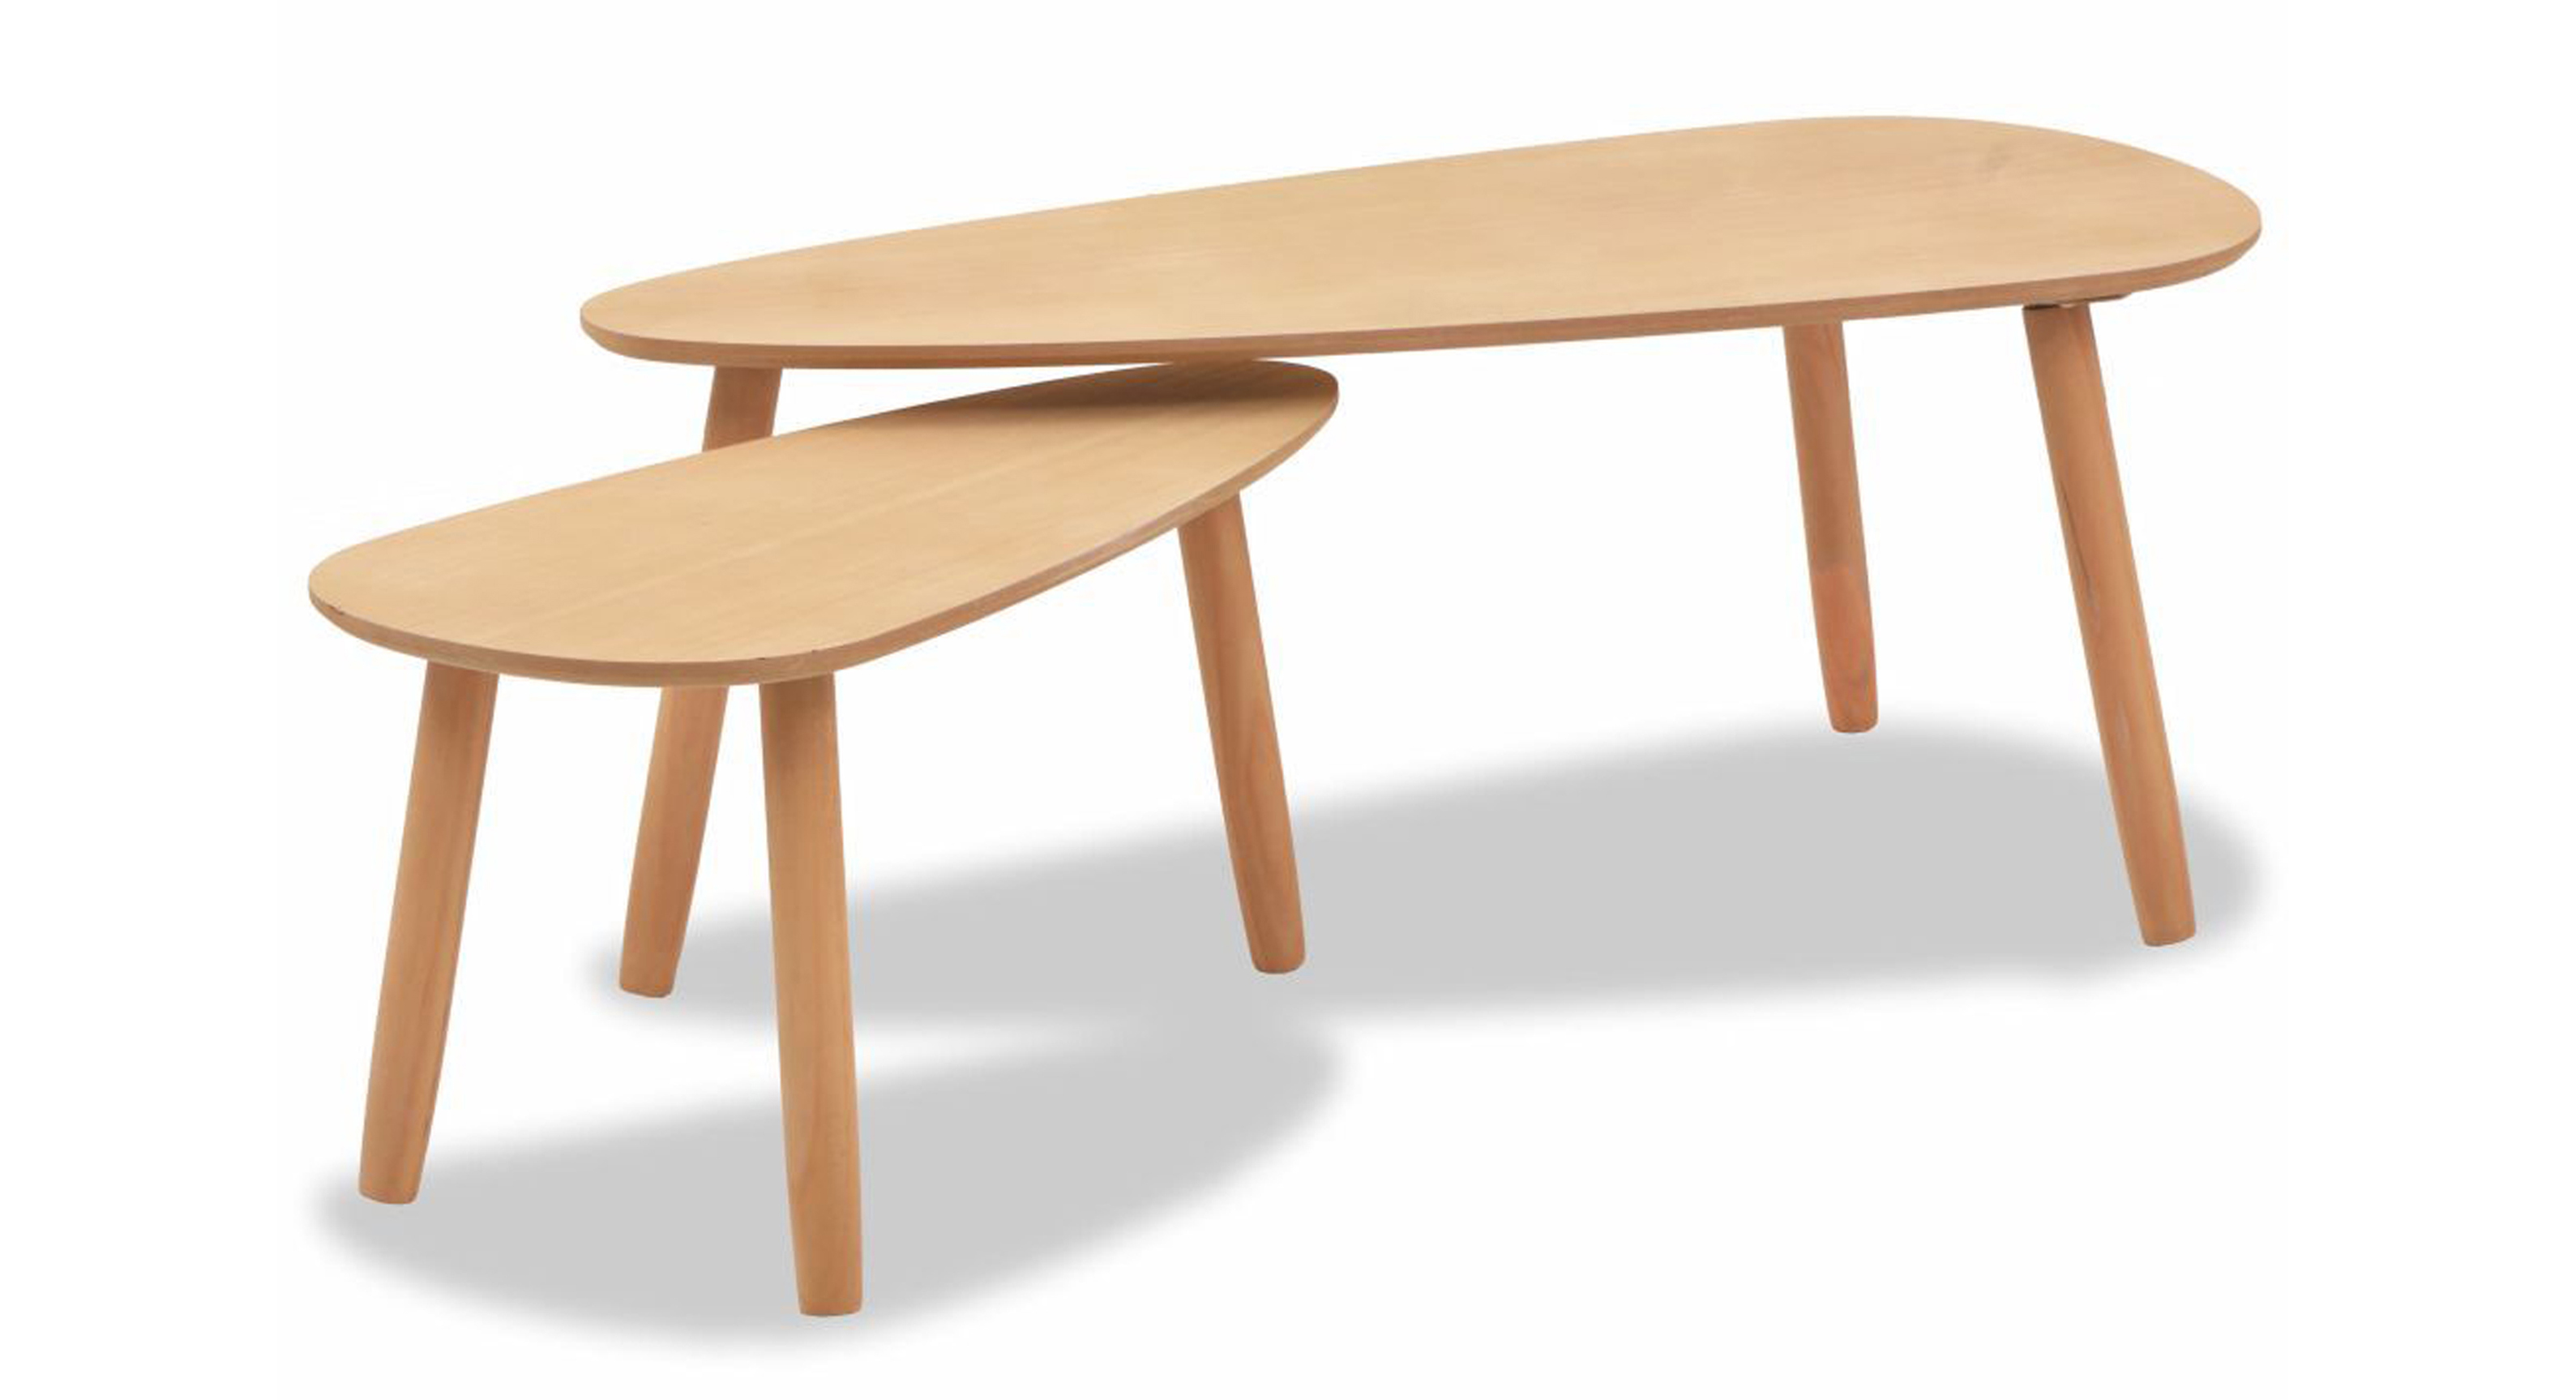 Emely Solid Wood 3 Legs Coffee Table, Brown, £109.99, Wayfair